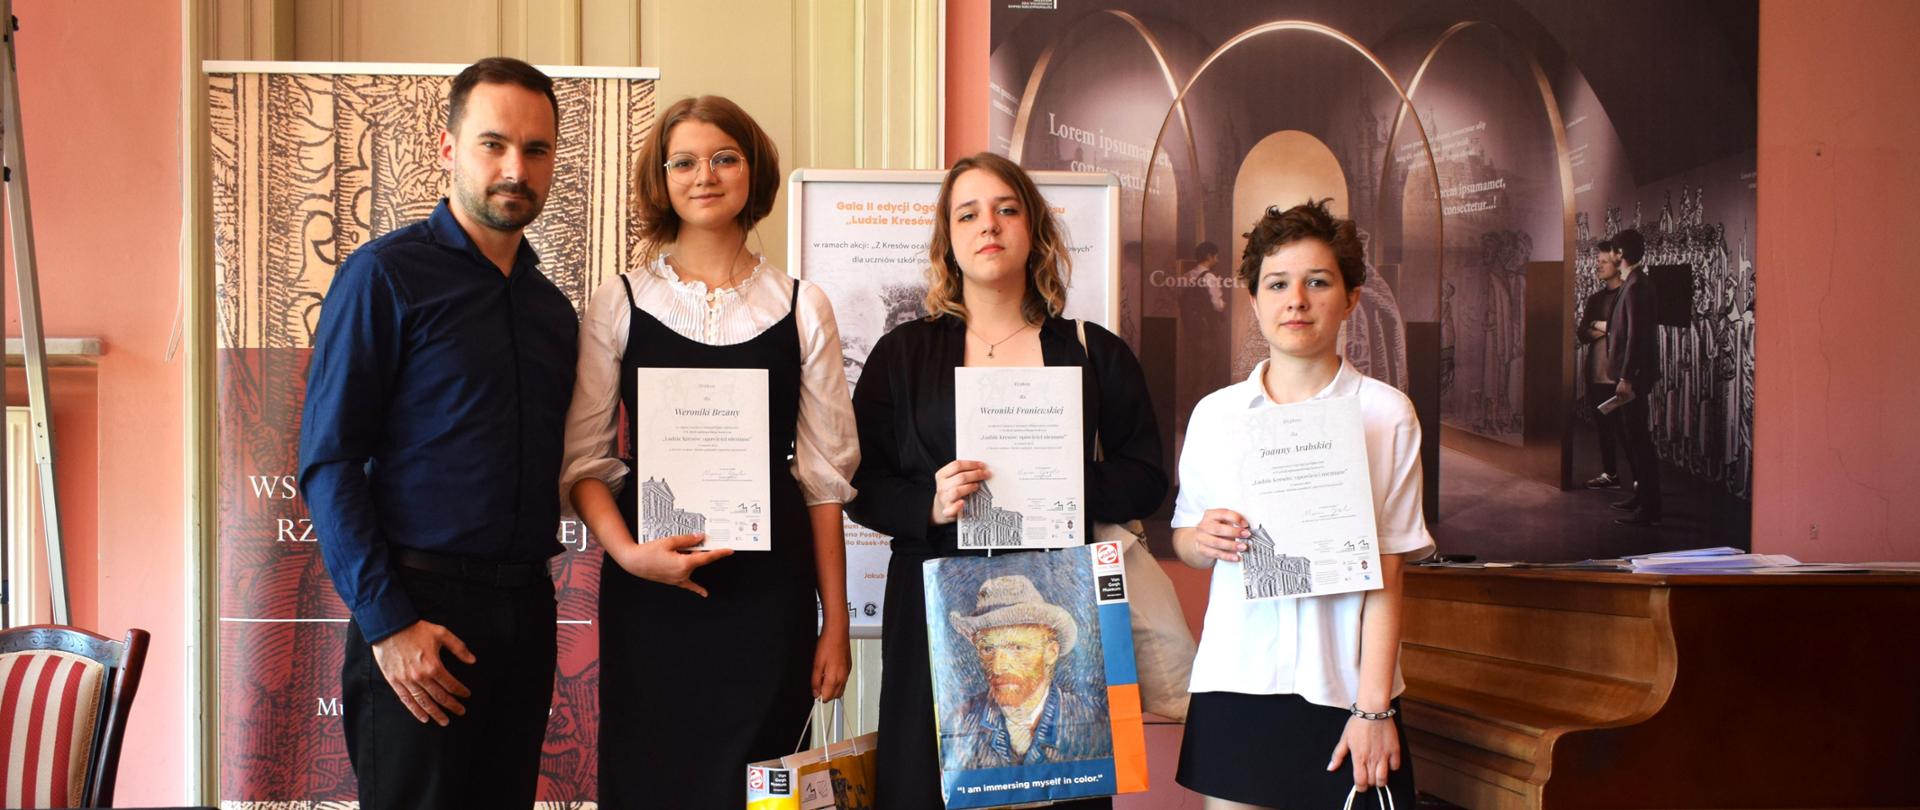 W Pałacu Potockich w Lublinie stoją nauczyciel i uczennice, które pokazują dyplomy. W dugiej ręce trzymają papierowe torby z prezentami.